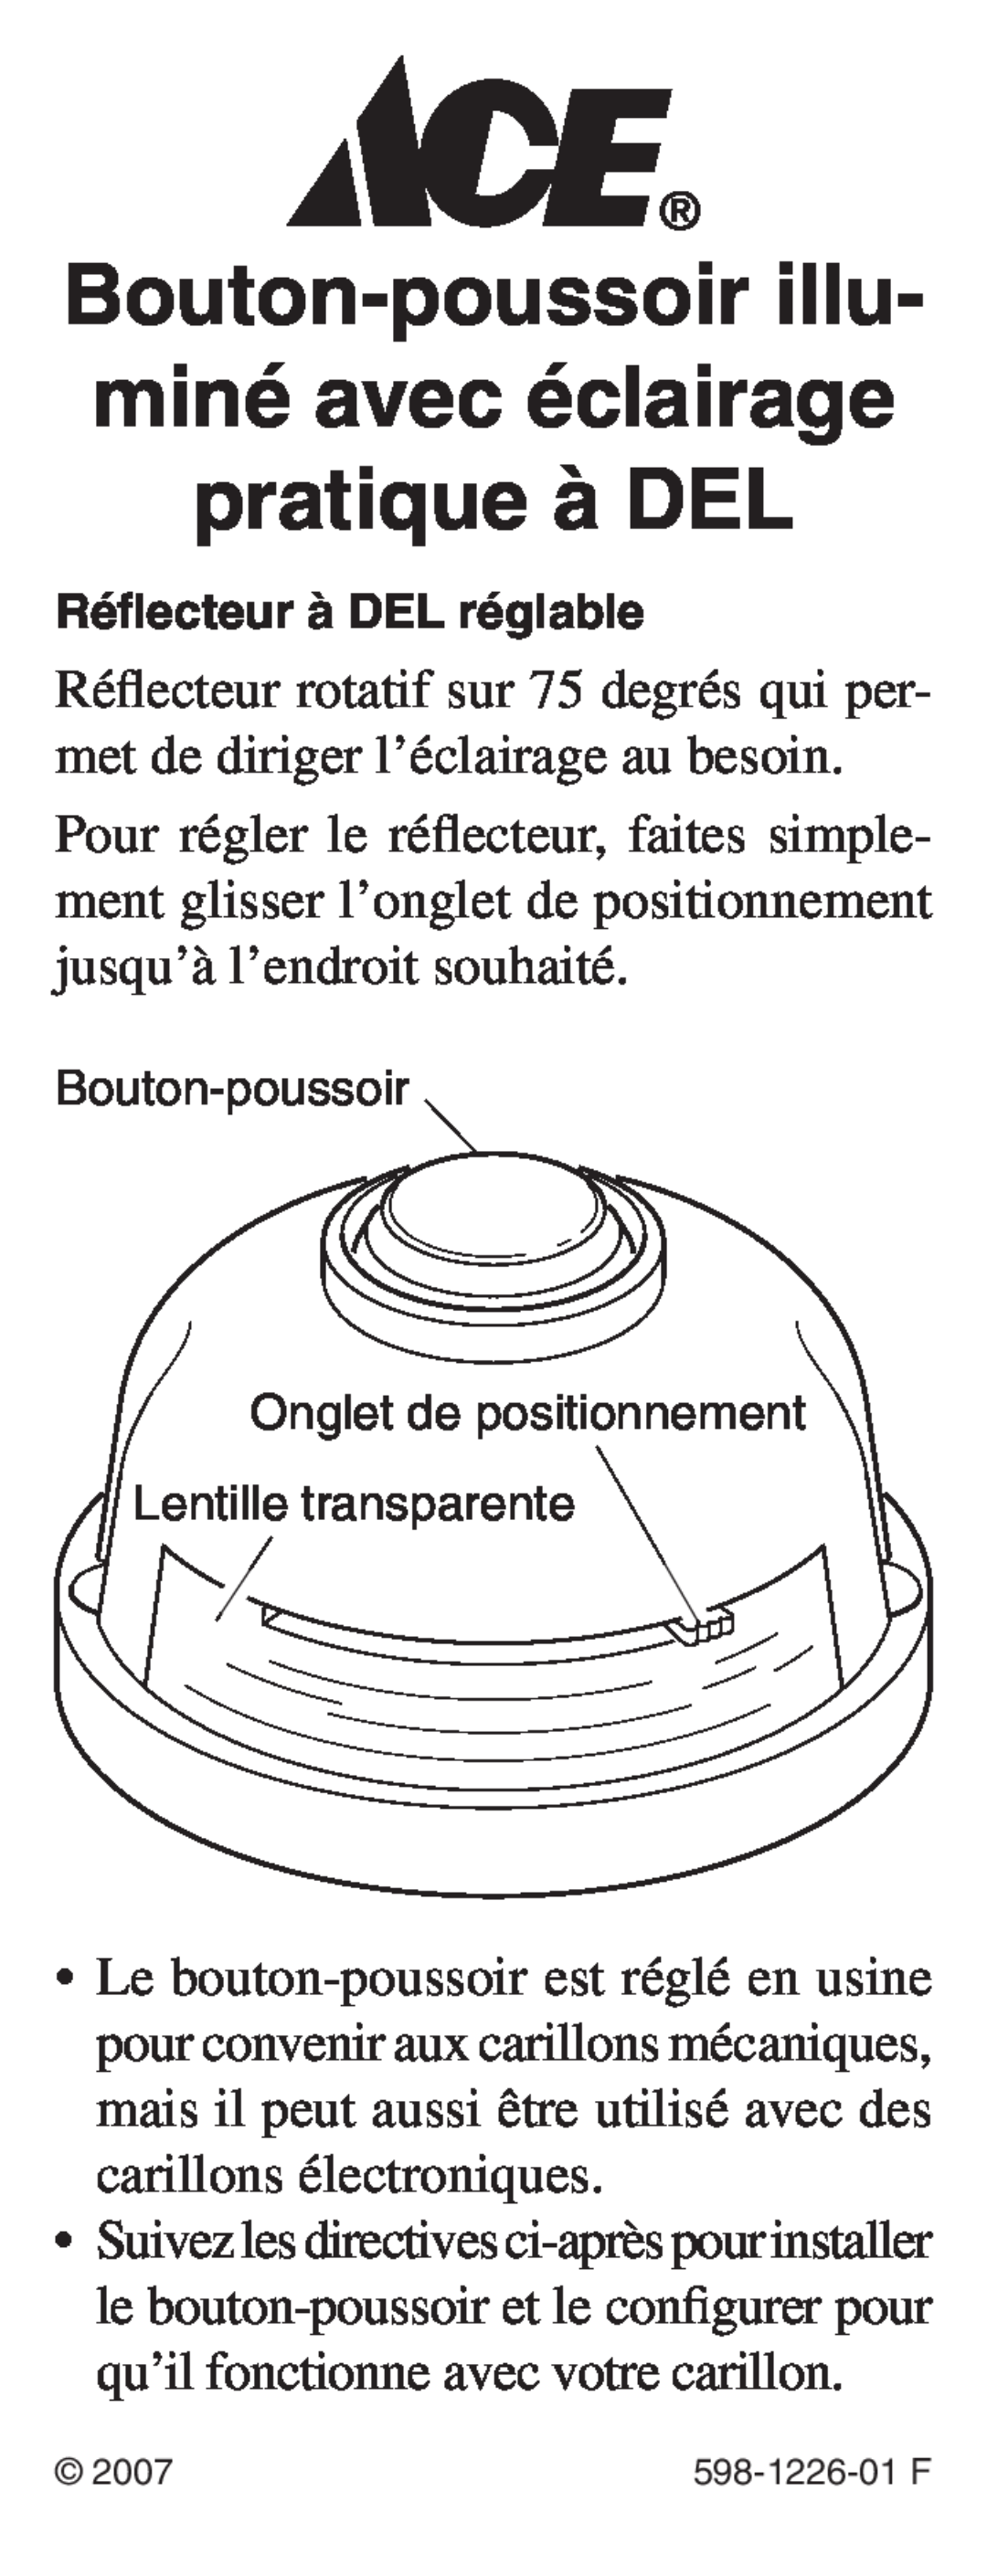 Heath Zenith 598-1226-01 manual Réflecteur à DEL réglable, Bouton-poussoir, Onglet de positionnement Lentille transparente 